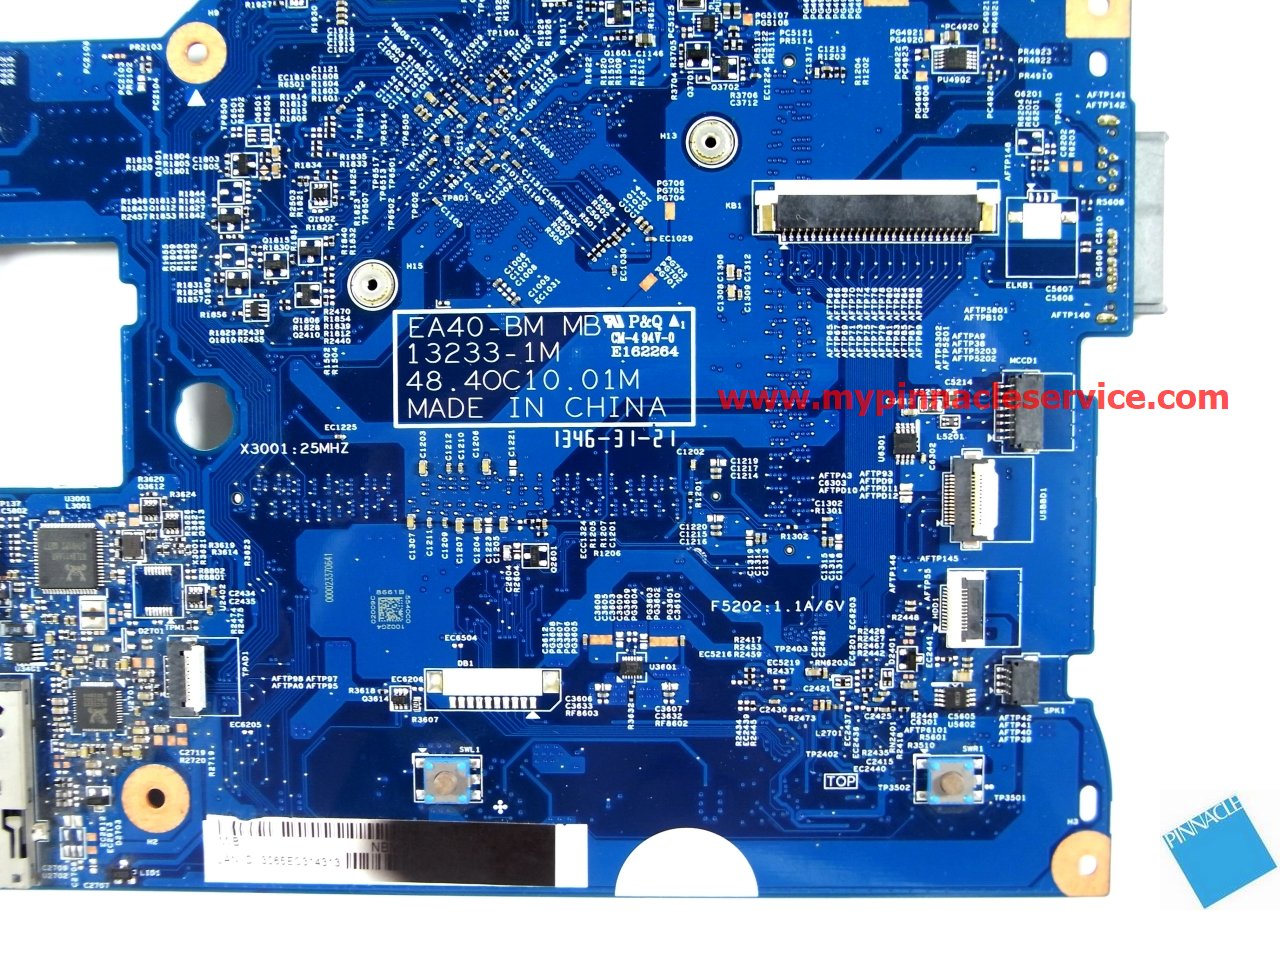 motherboard-for-acer-aspire-e1-410-e1-410g-ea40-bm-48.4oc10.01m-rimg0048-1-nbmgp1005.jpg